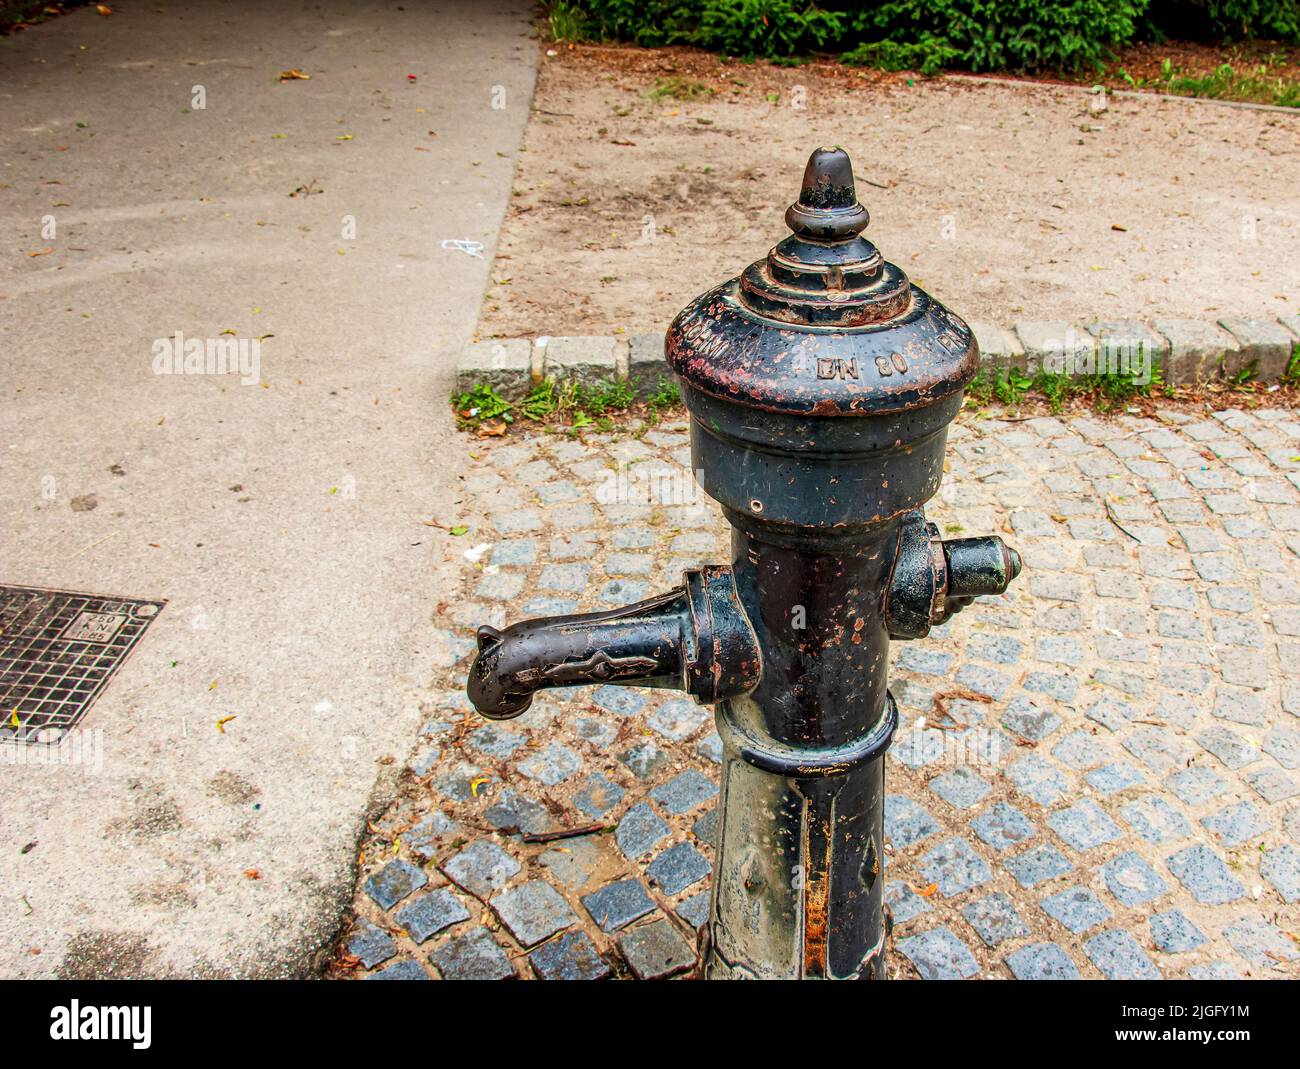 Bomba de agua manual vieja foto de archivo. Imagen de viejo - 38343284